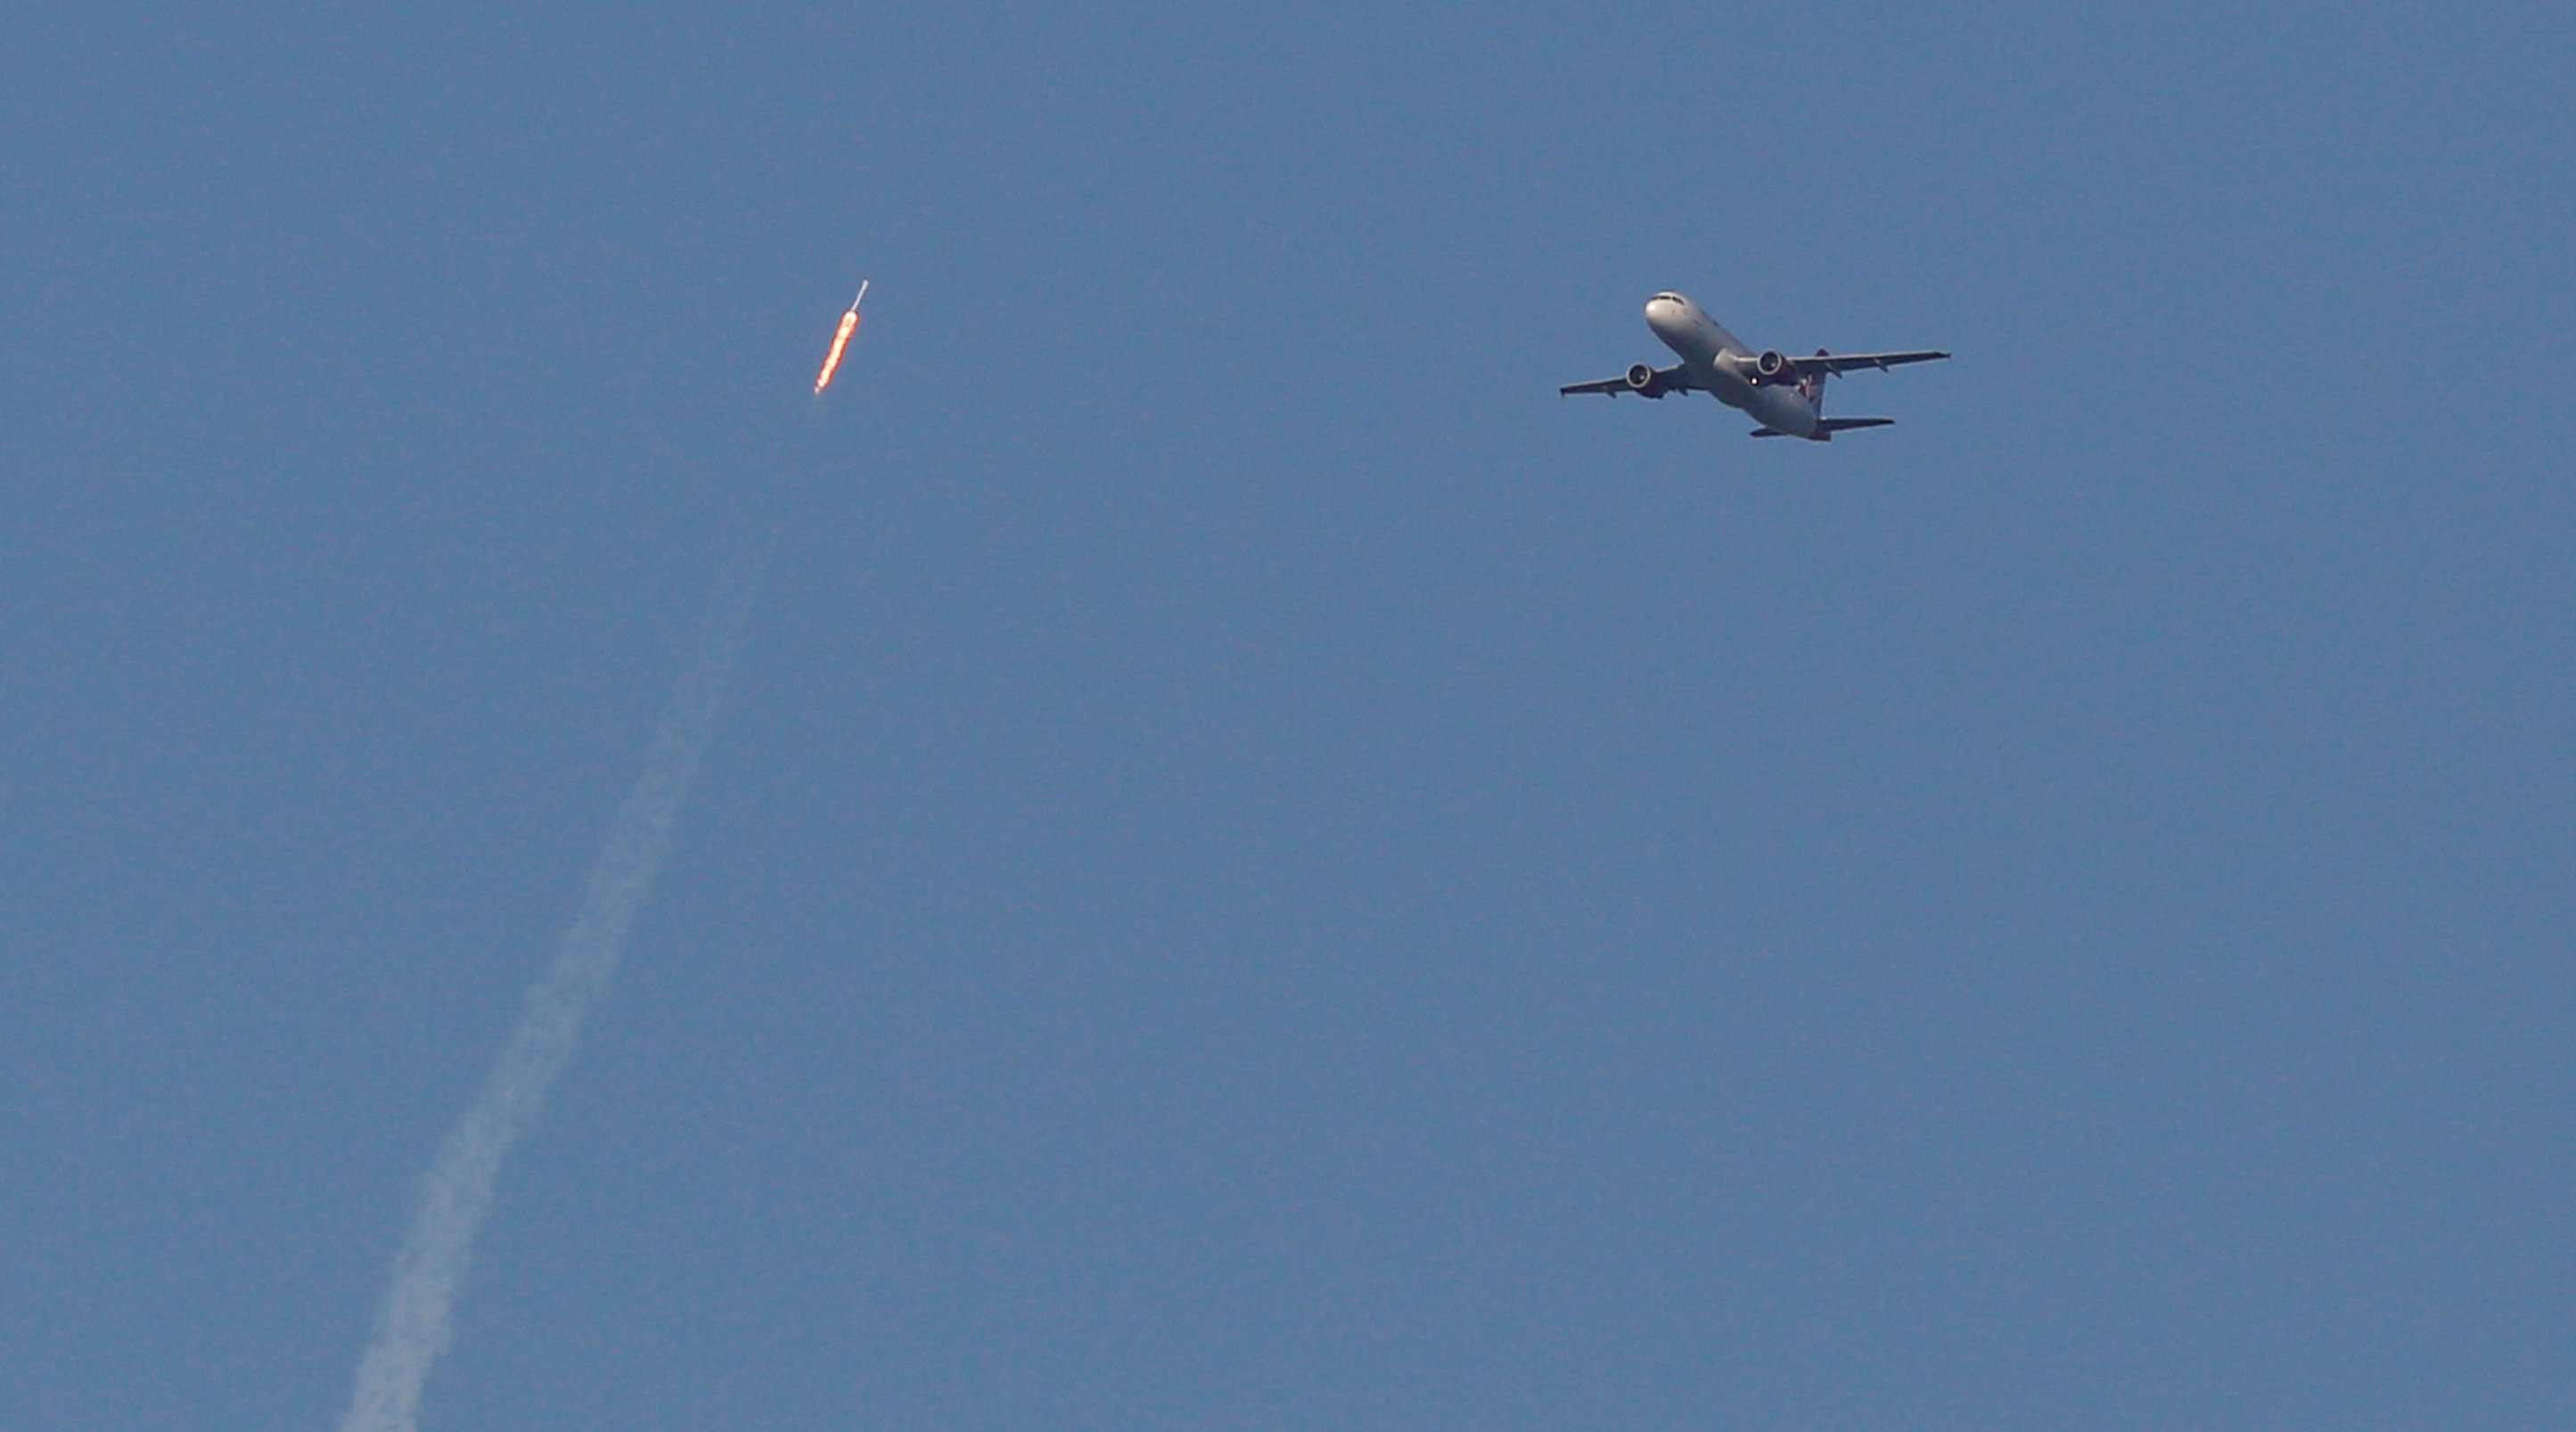 سبيس إكس تطلق أول صاروخ مستعمل فى اختبار لخطط تخفيض النفقات